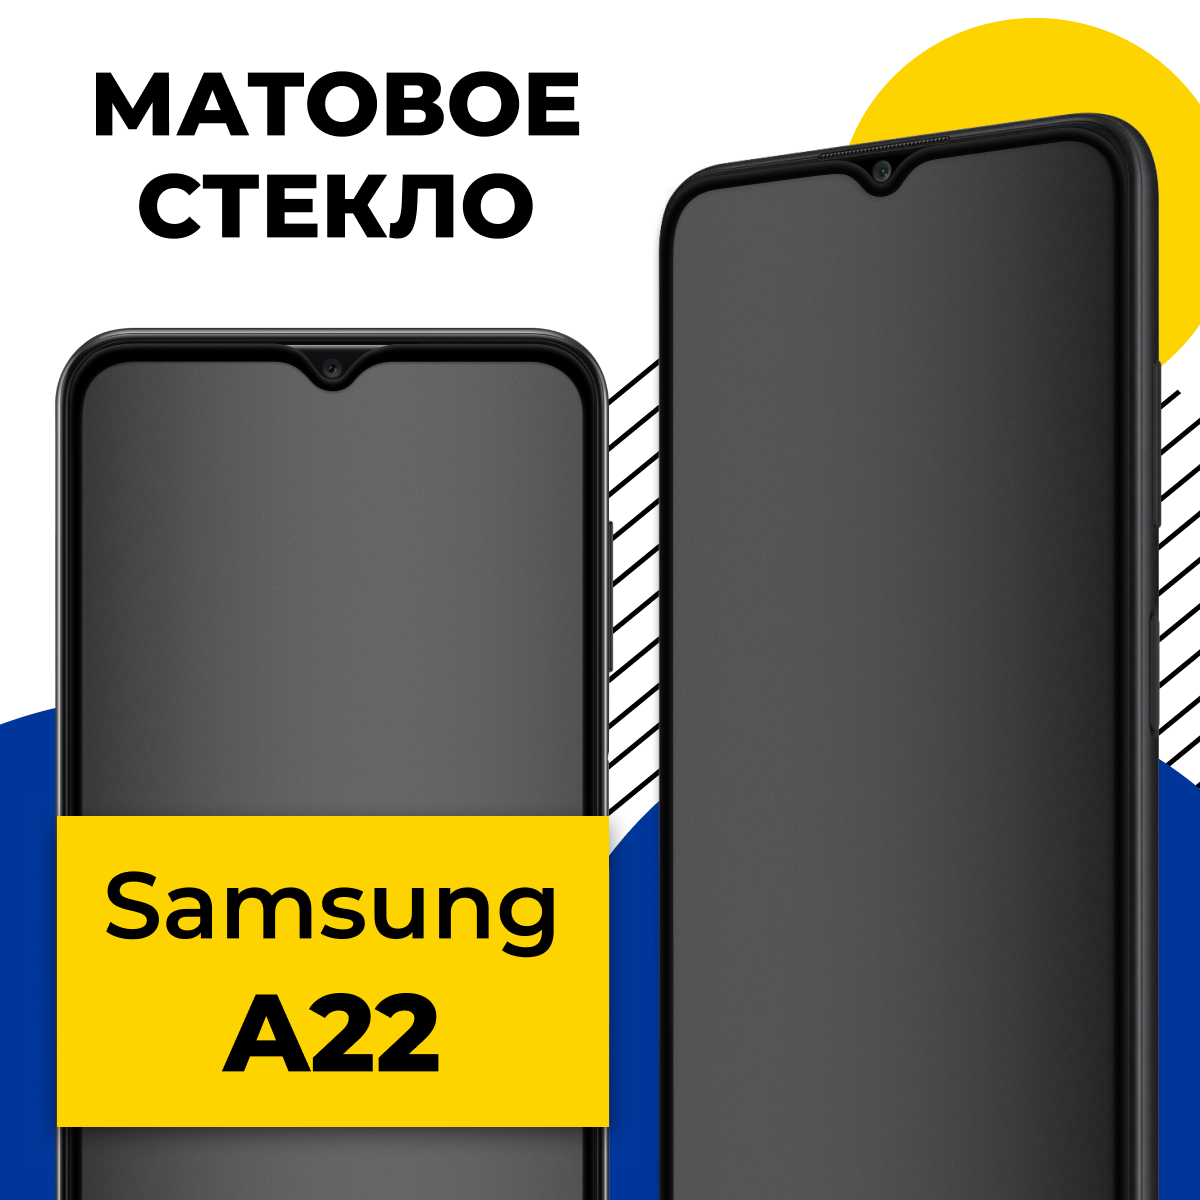 Матовое защитное стекло для телефона Samsung Galaxy A22 / Противоударное стекло 2.5D на смартфон Самсунг Галакси А22 с олеофобным покрытием